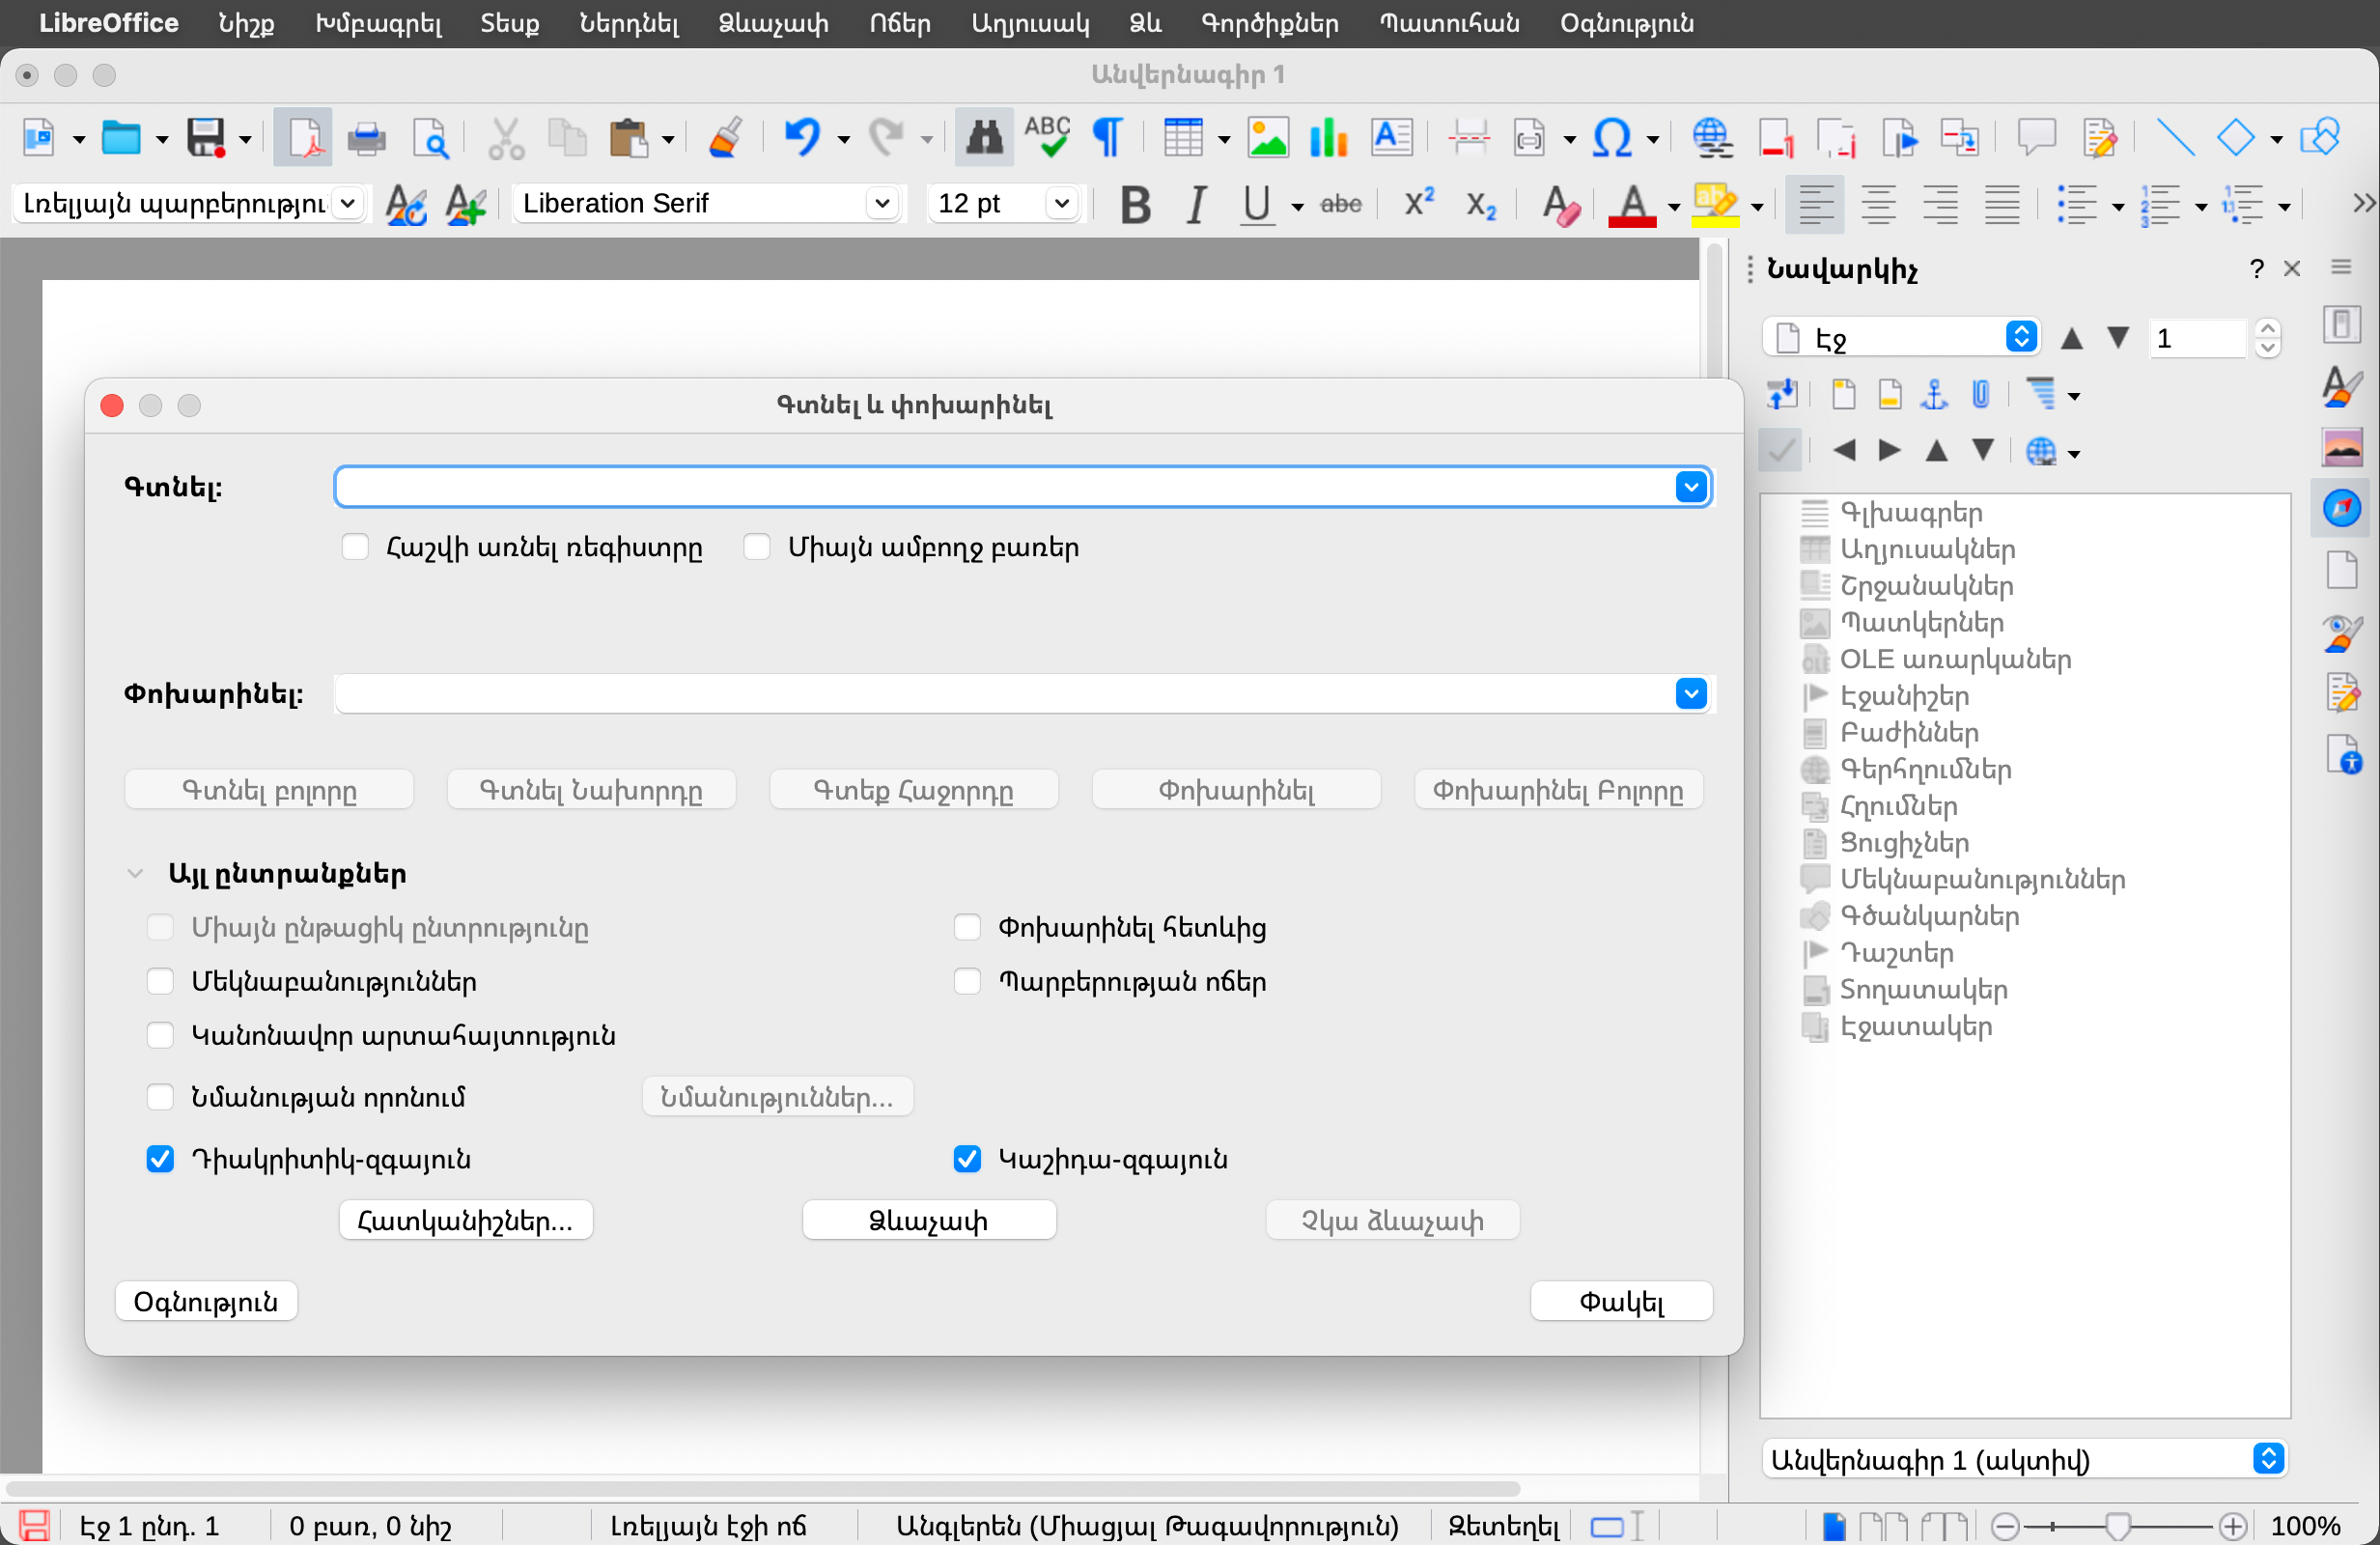 Capture d'écran montrant l'interface de LibreOffice traduite en arménien.